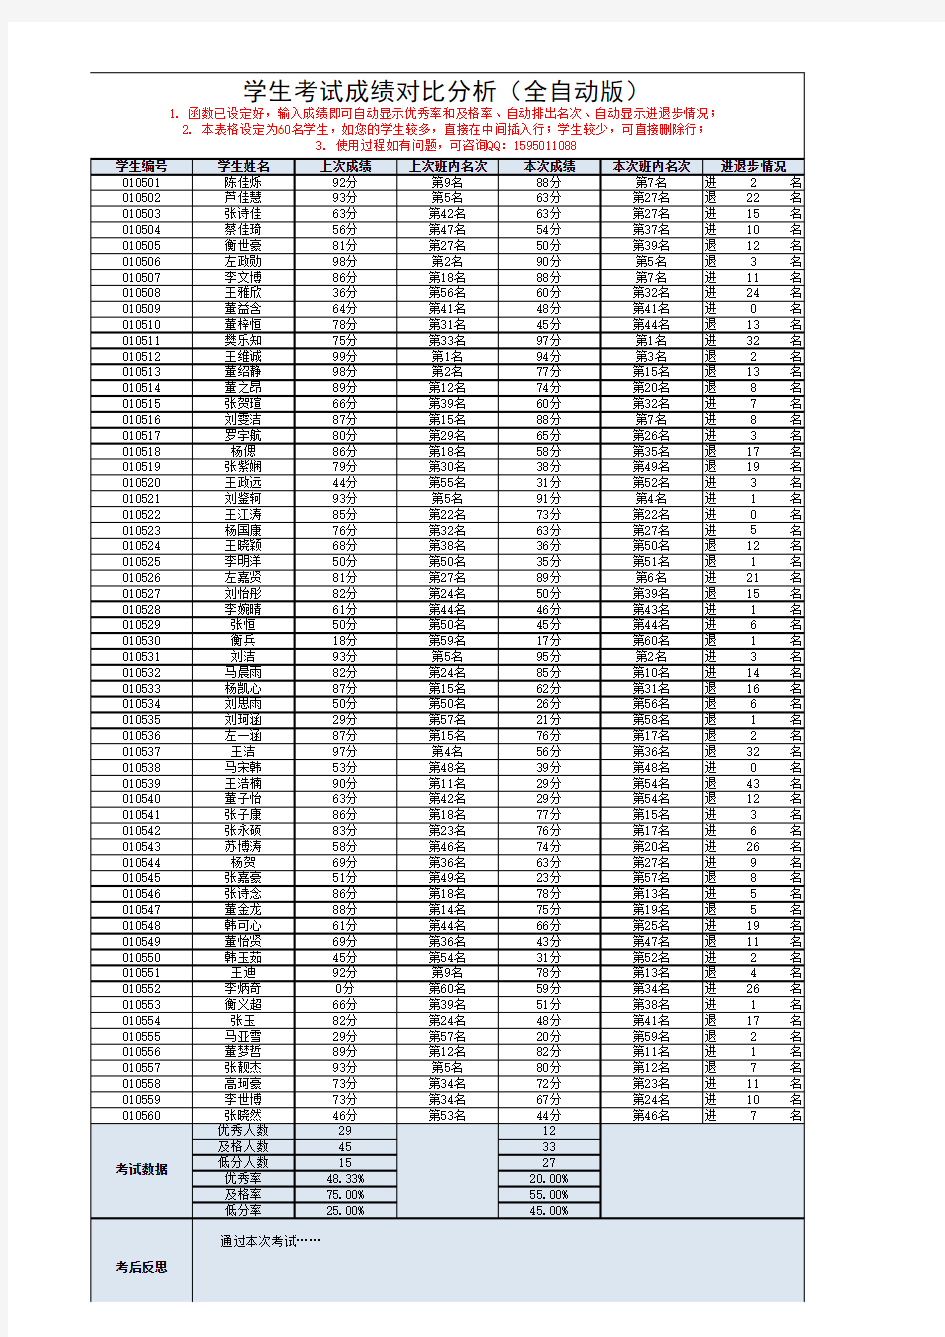 学生考试成绩对比分析表单(全自动版)